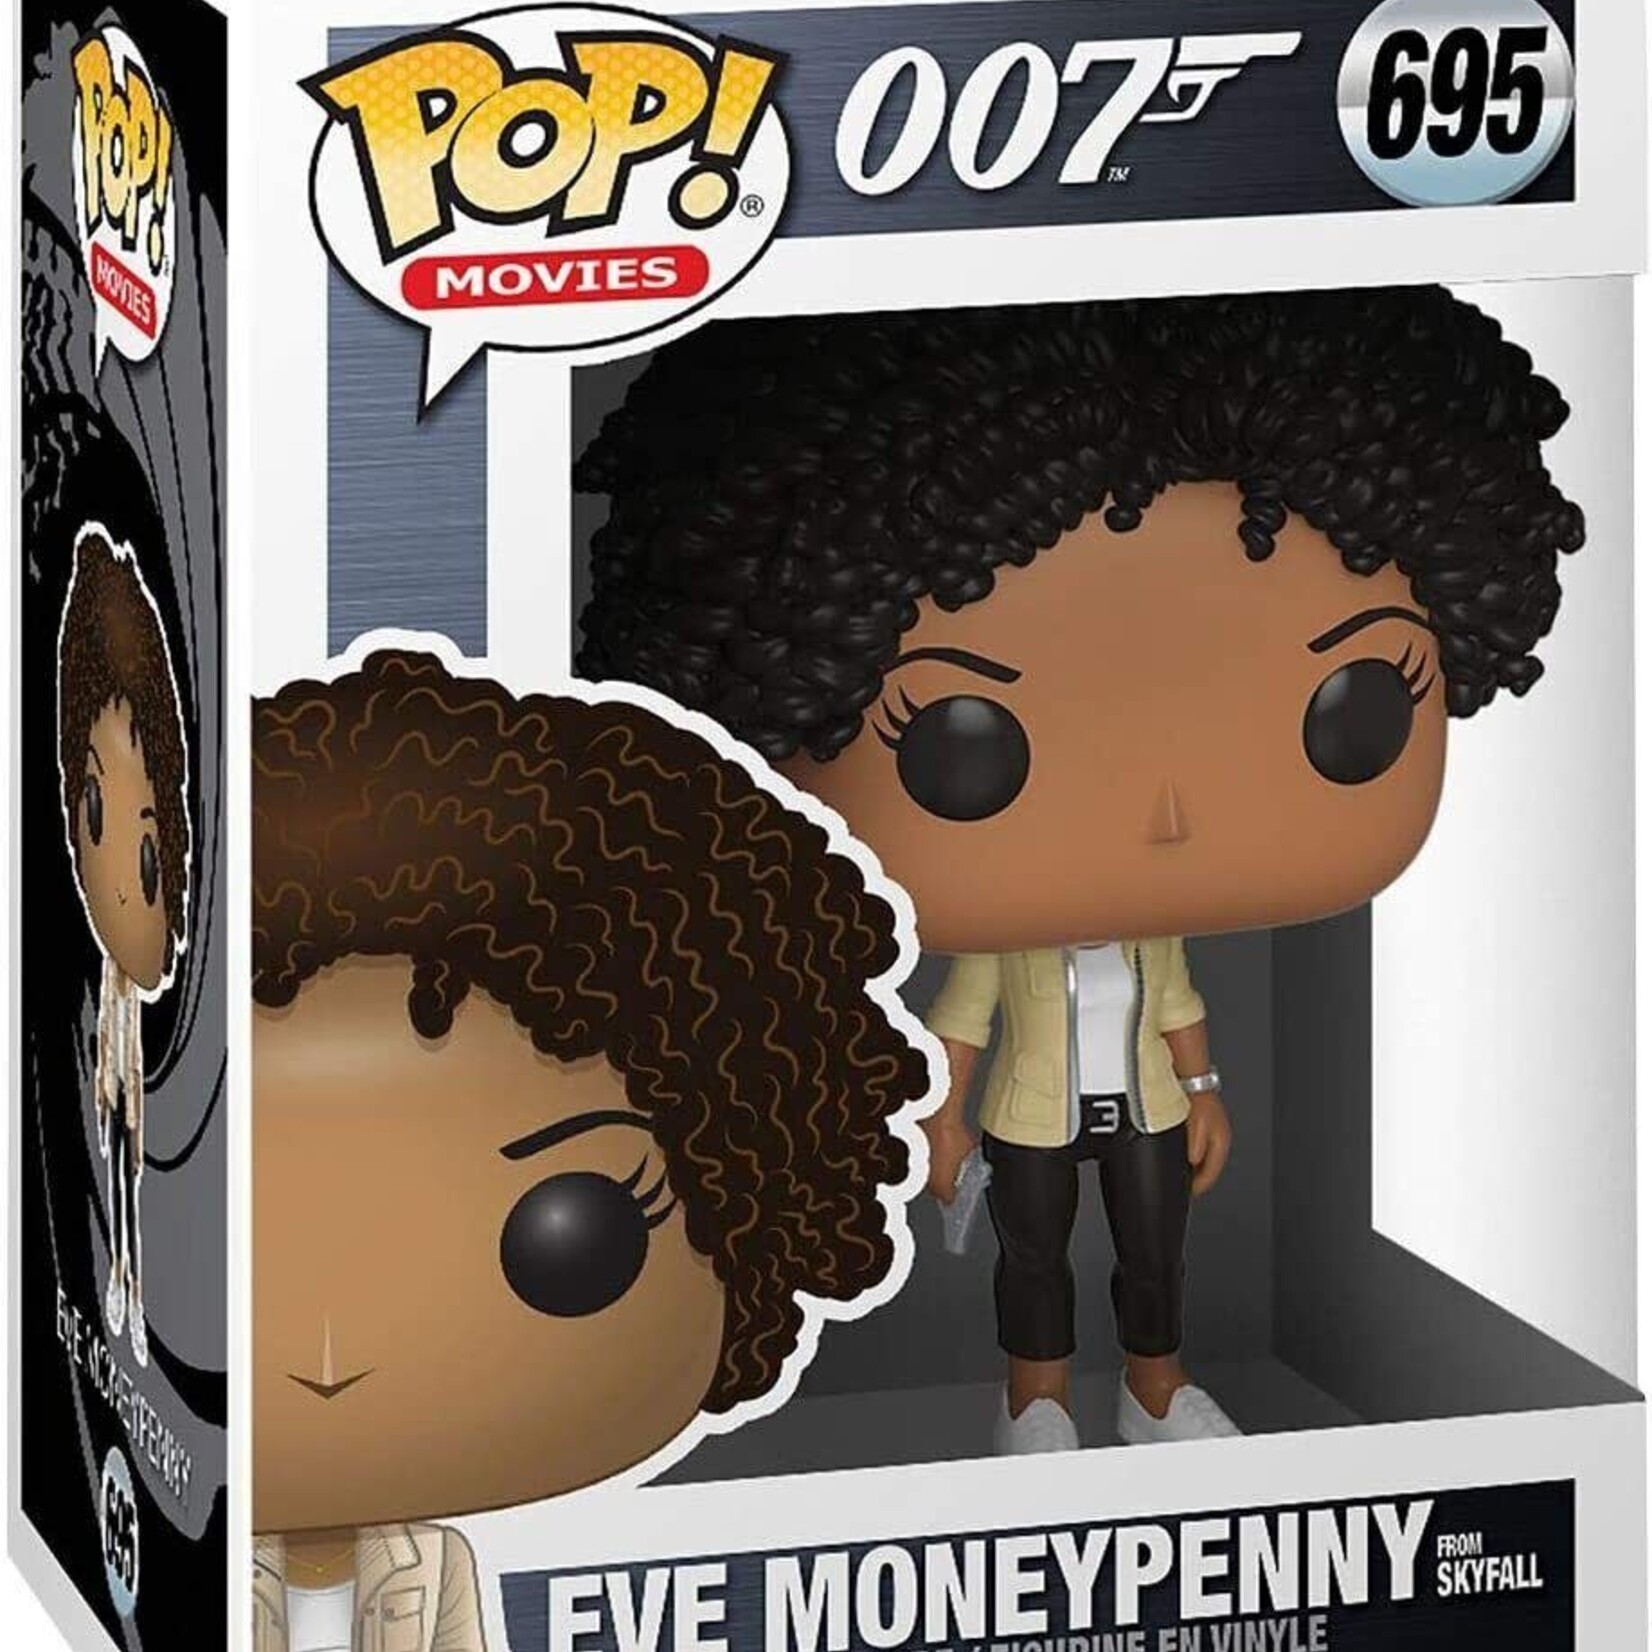 Funko Funko Pop! 007 695 : Eve Moneypenny